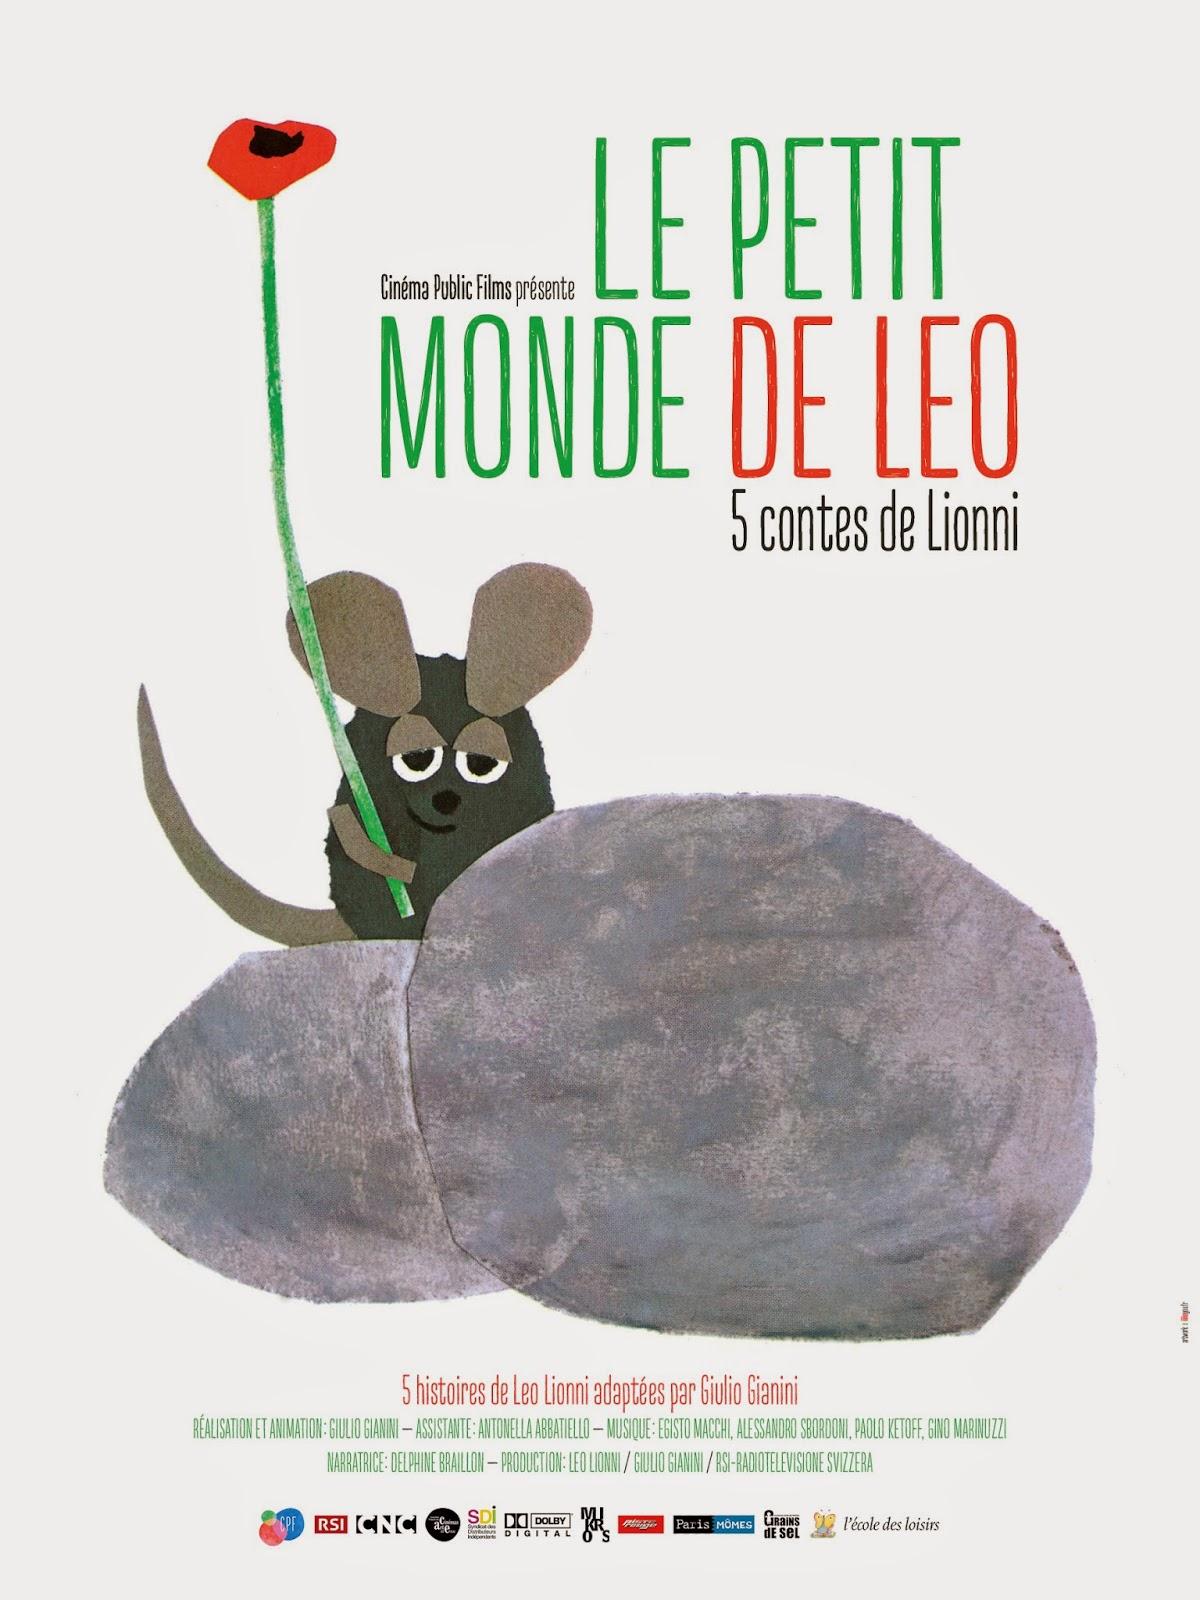 Le petit monde de Léo (Lionni) sortira le 11 février sur grand écran